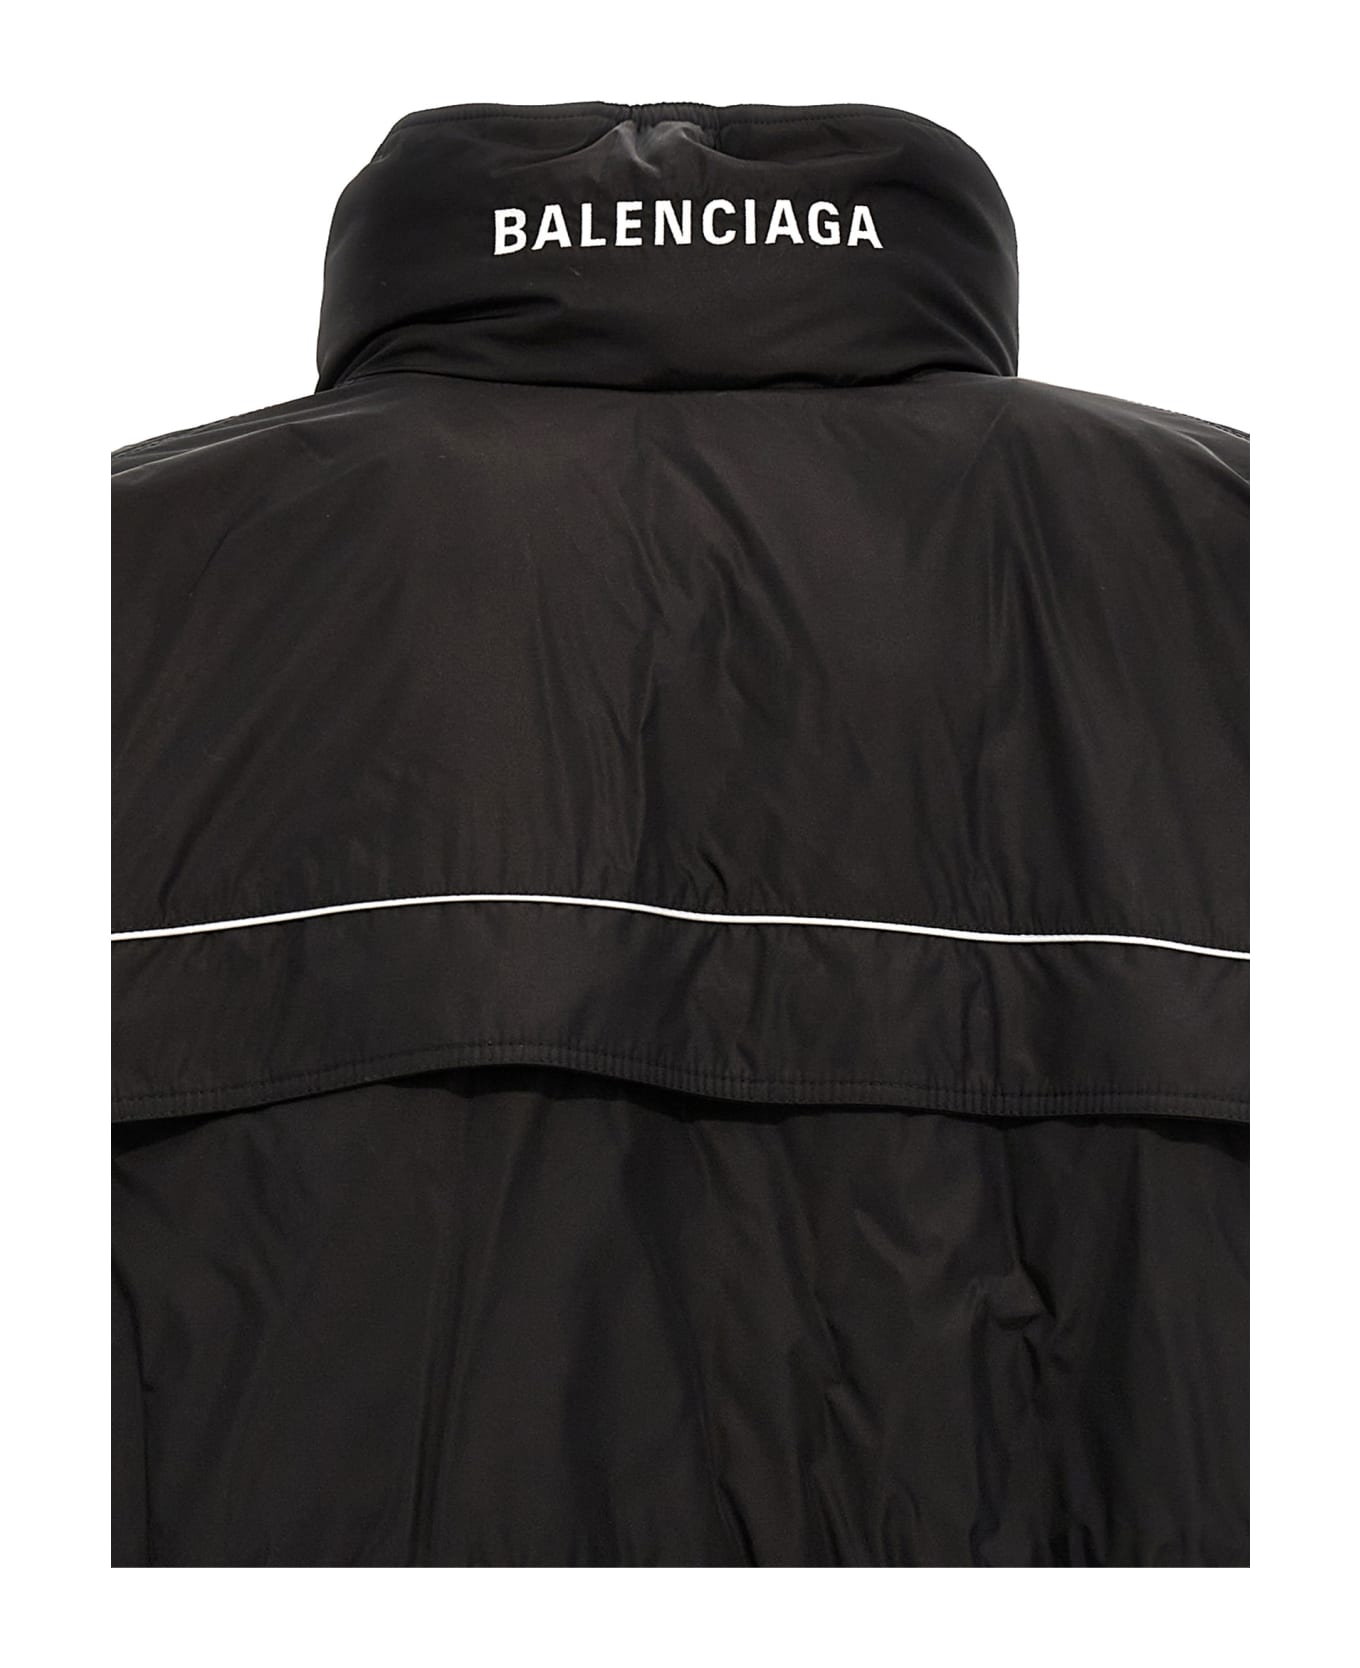 Balenciaga Wrap Parka - Black ダウンジャケット